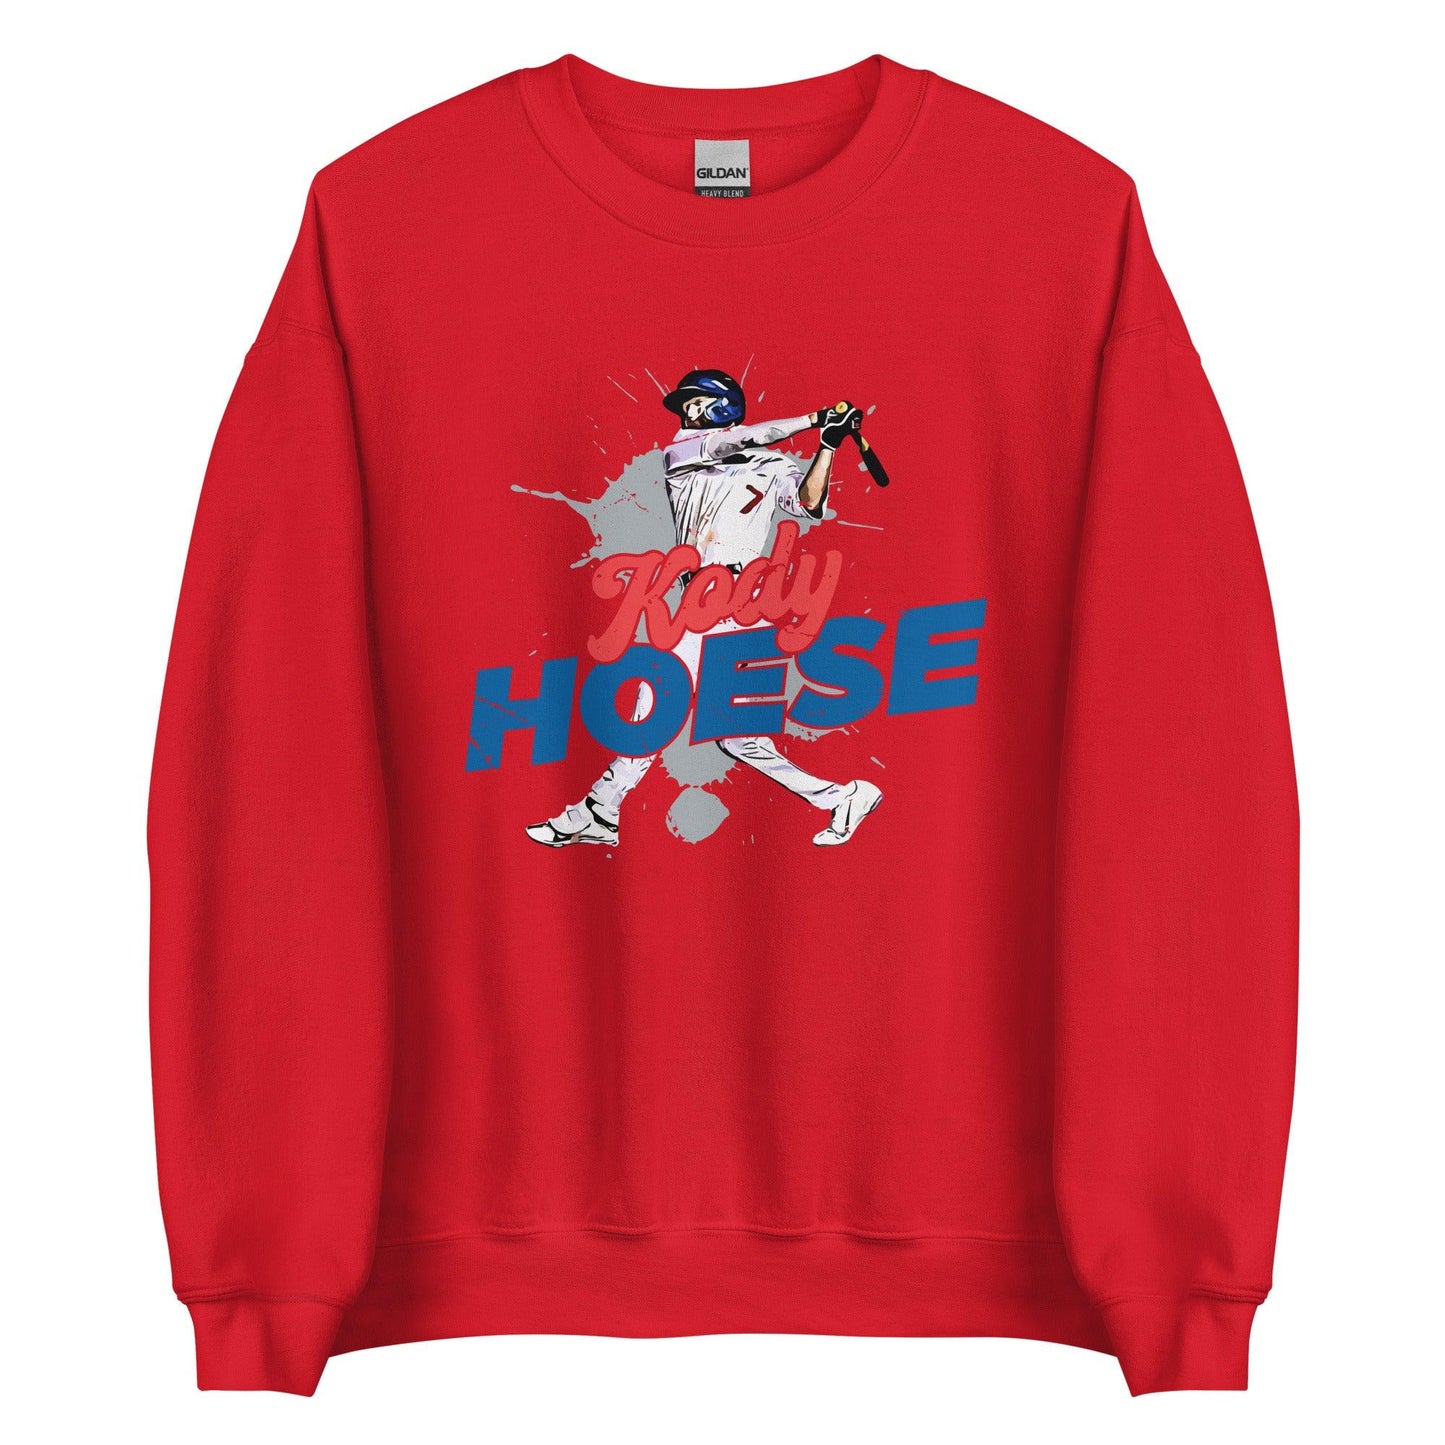 Kody Hoese "Power" Sweatshirt - Fan Arch